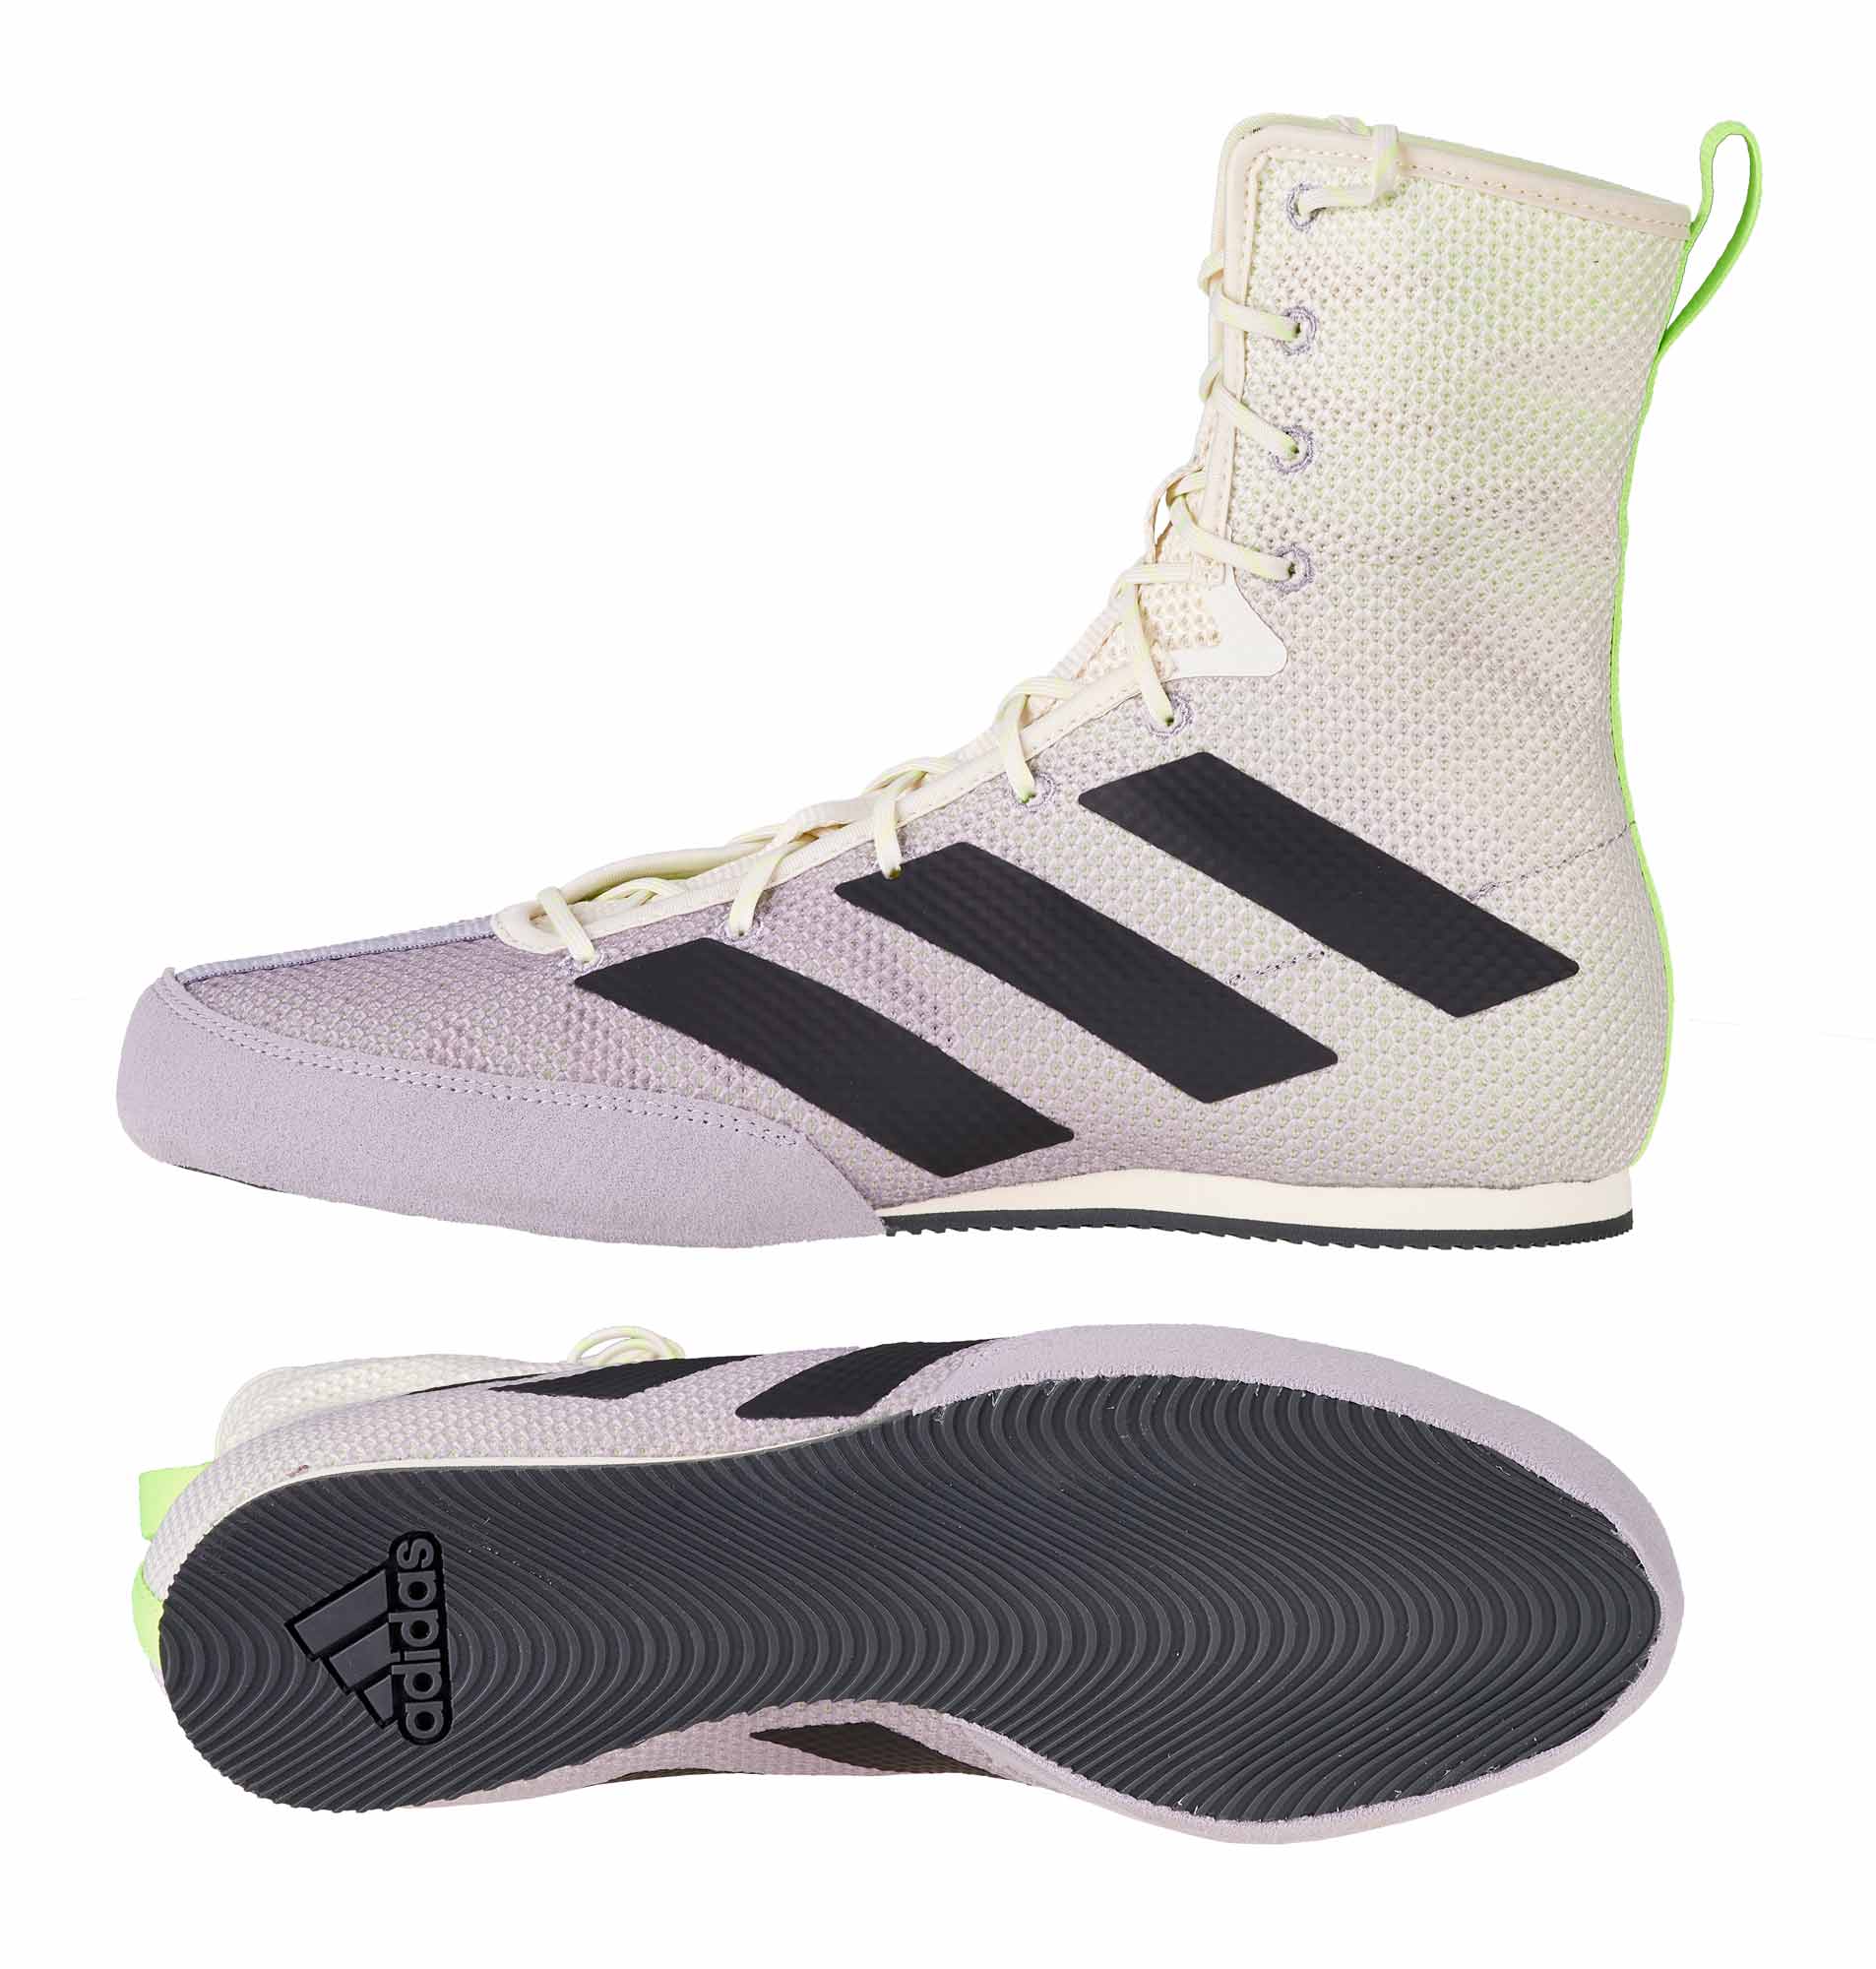 adidas box hog 3 FV6584 fitness shoes, white/grey/lime